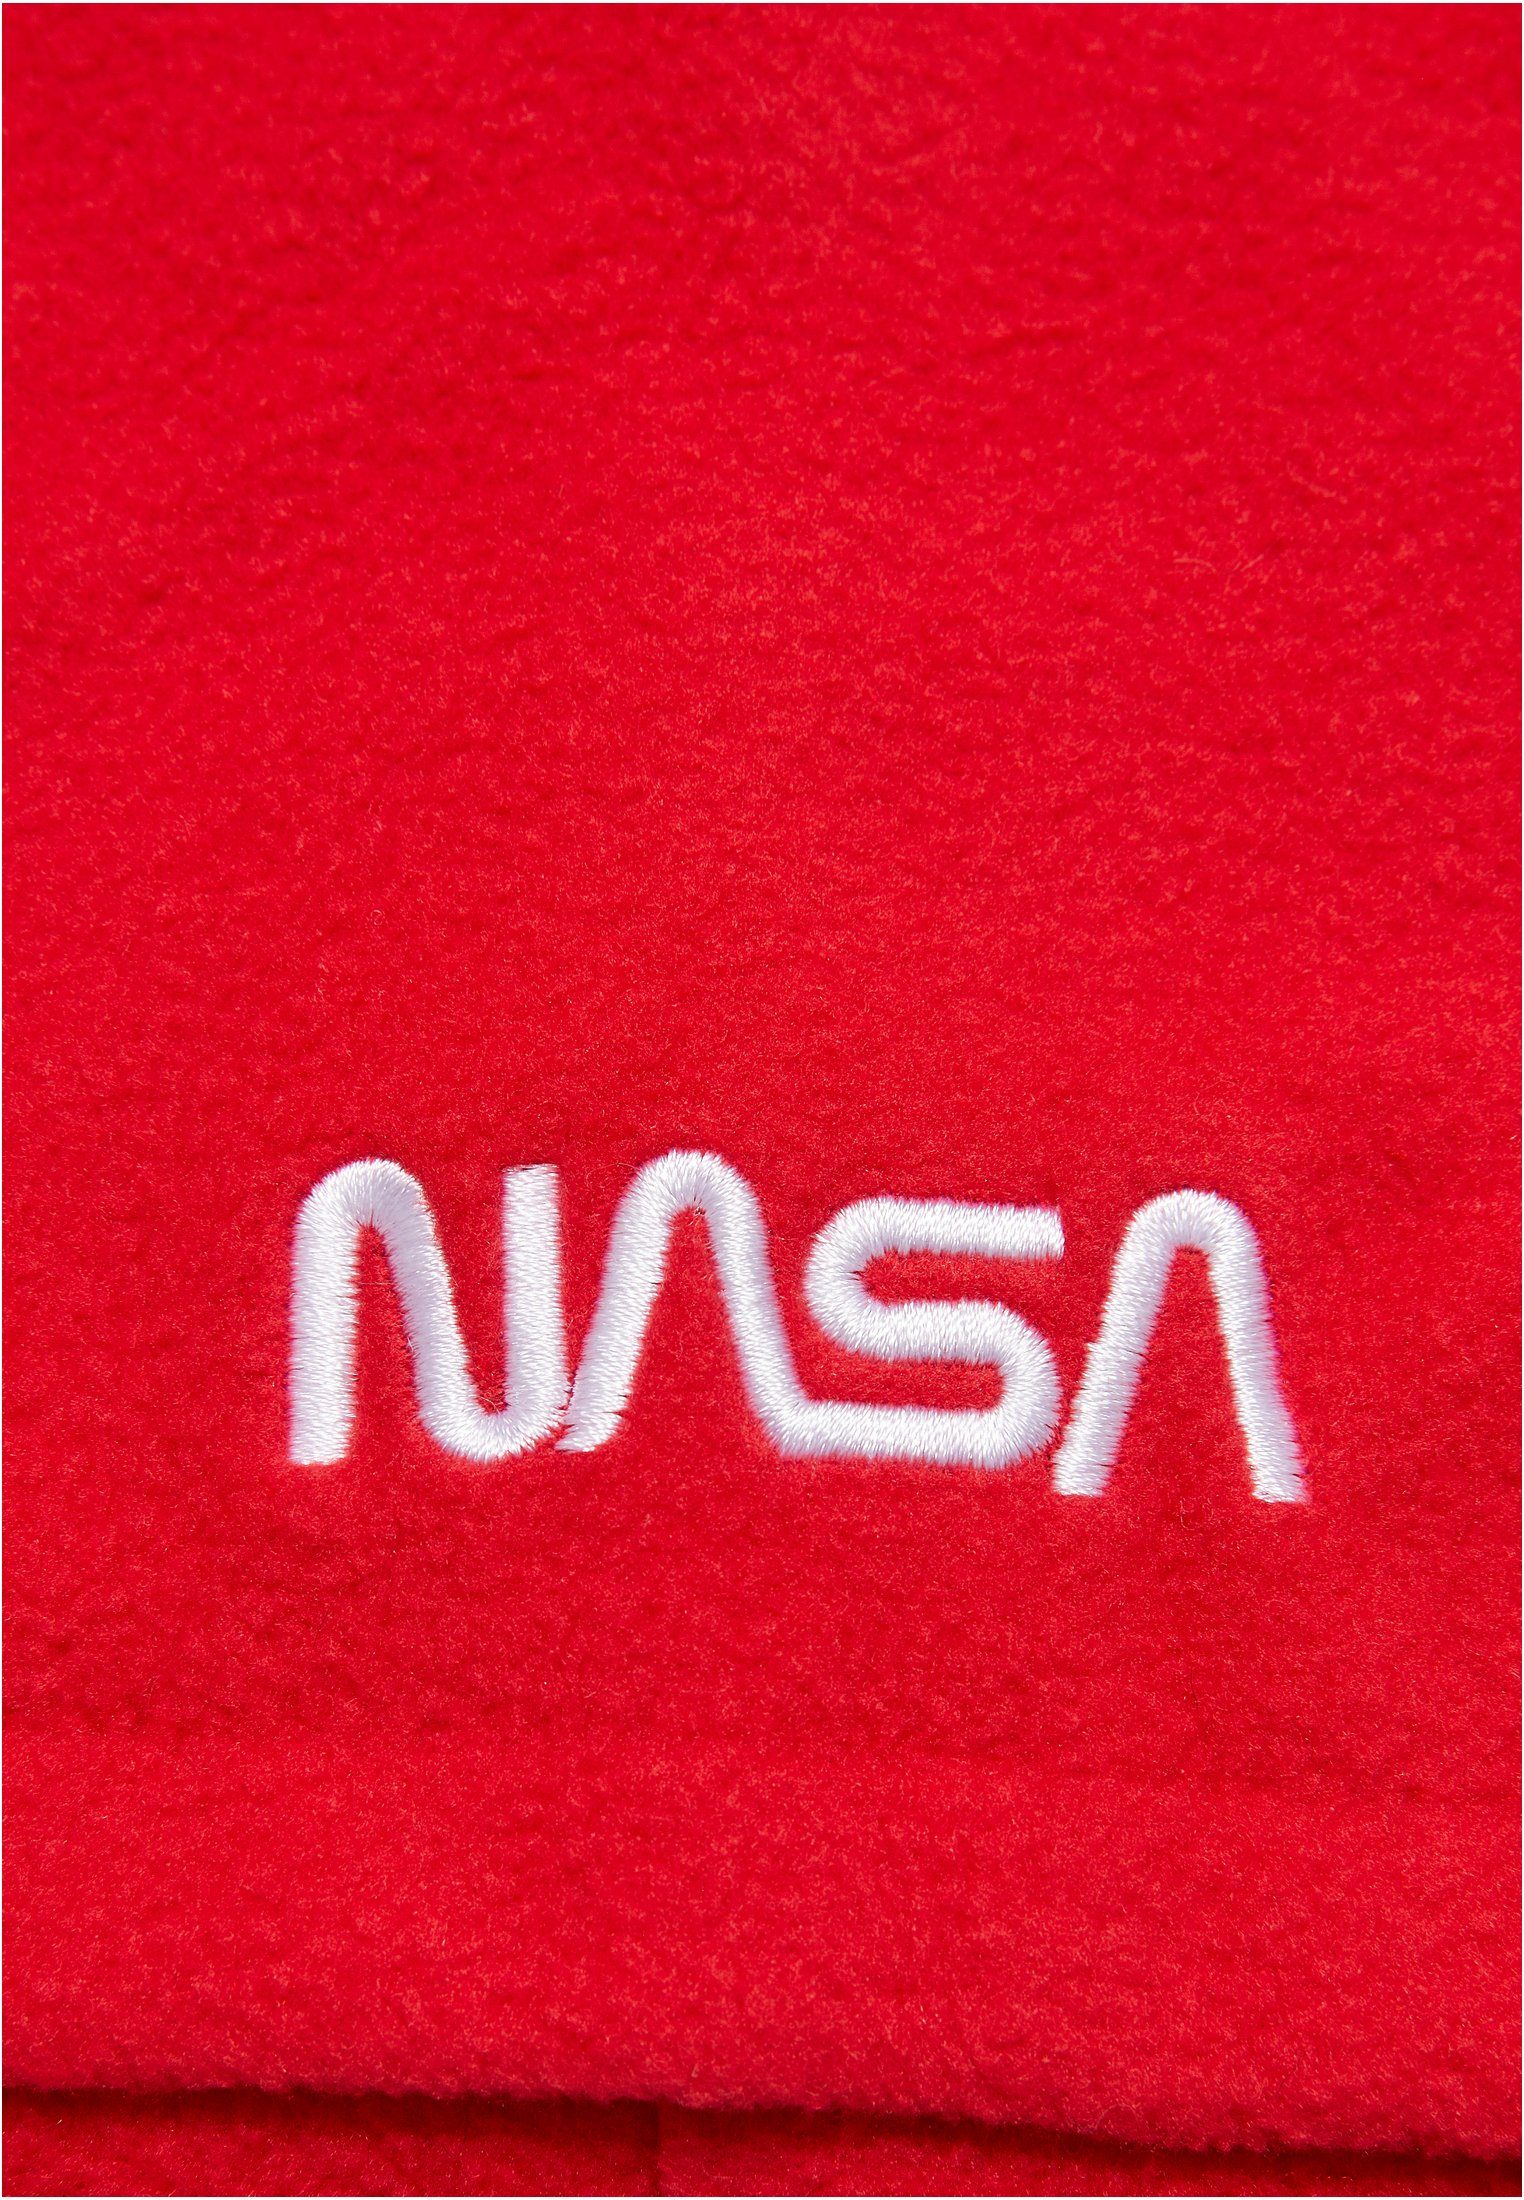 Baumwollhandschuhe MisterTee NASA red Fleece Set Accessoires